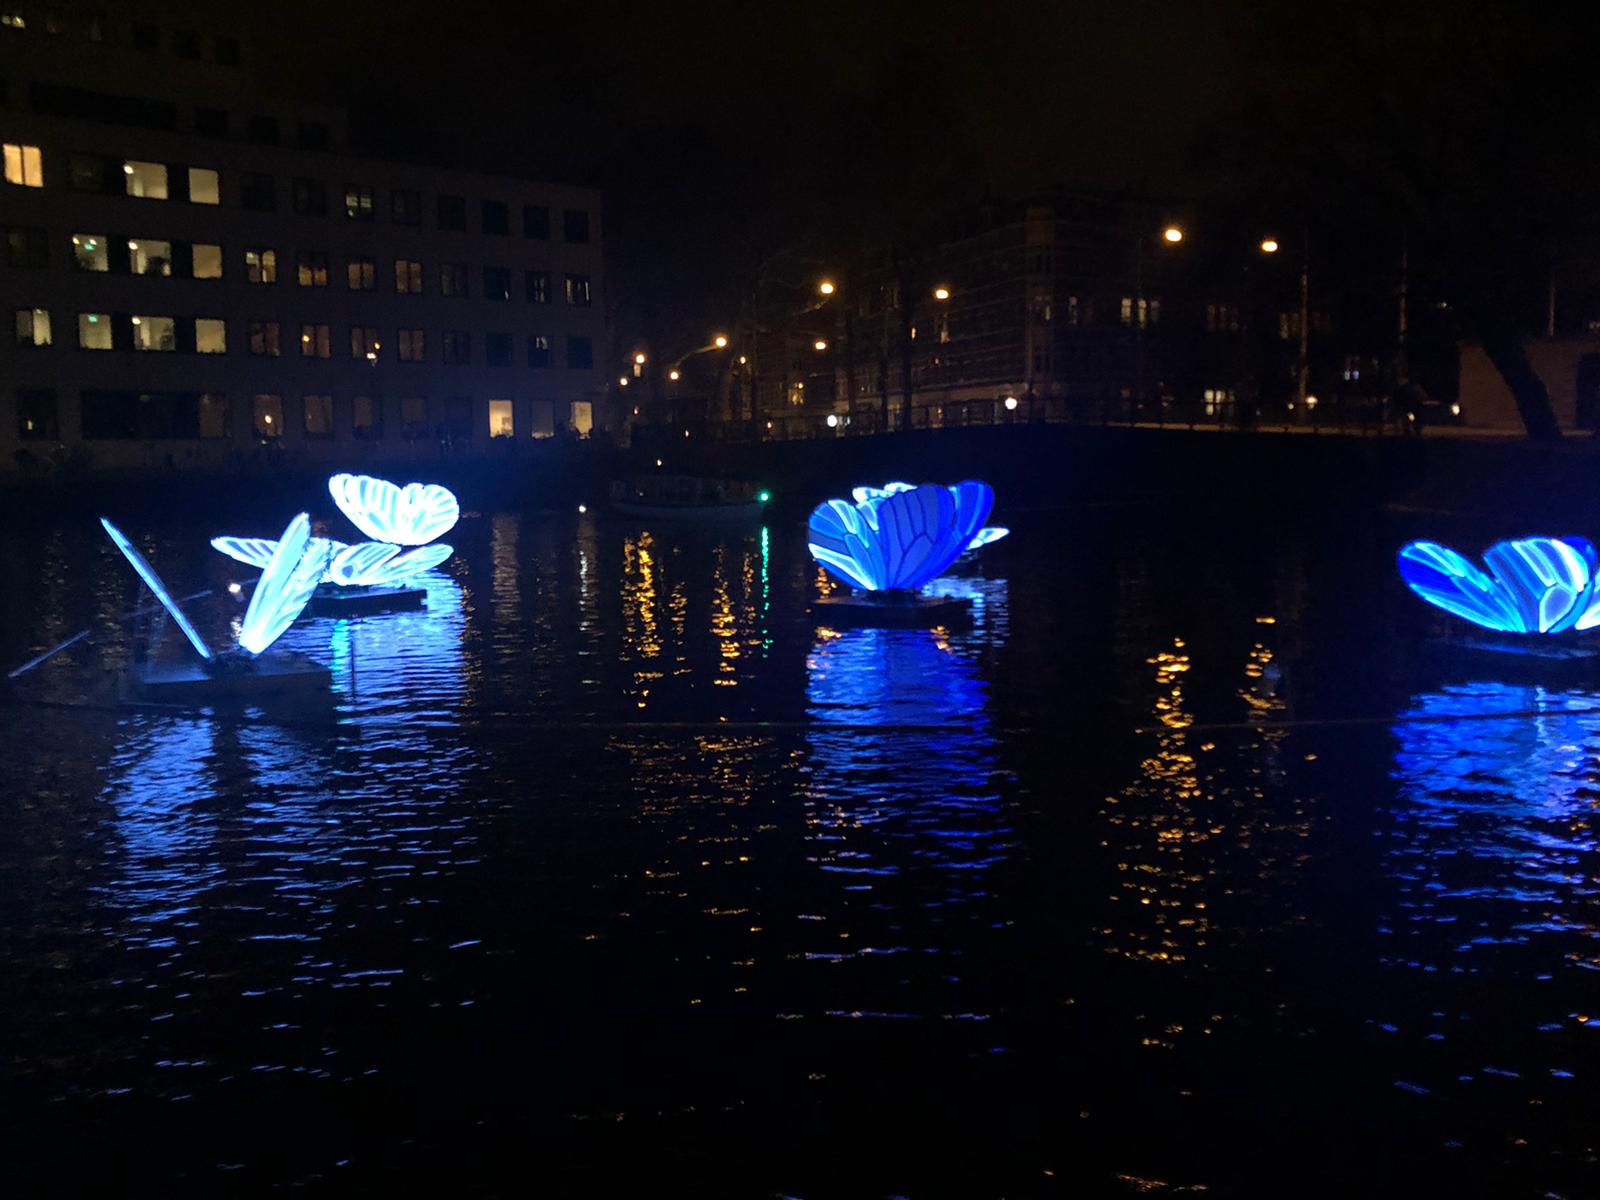 Sebi boat tours - Amsterdam light art festival